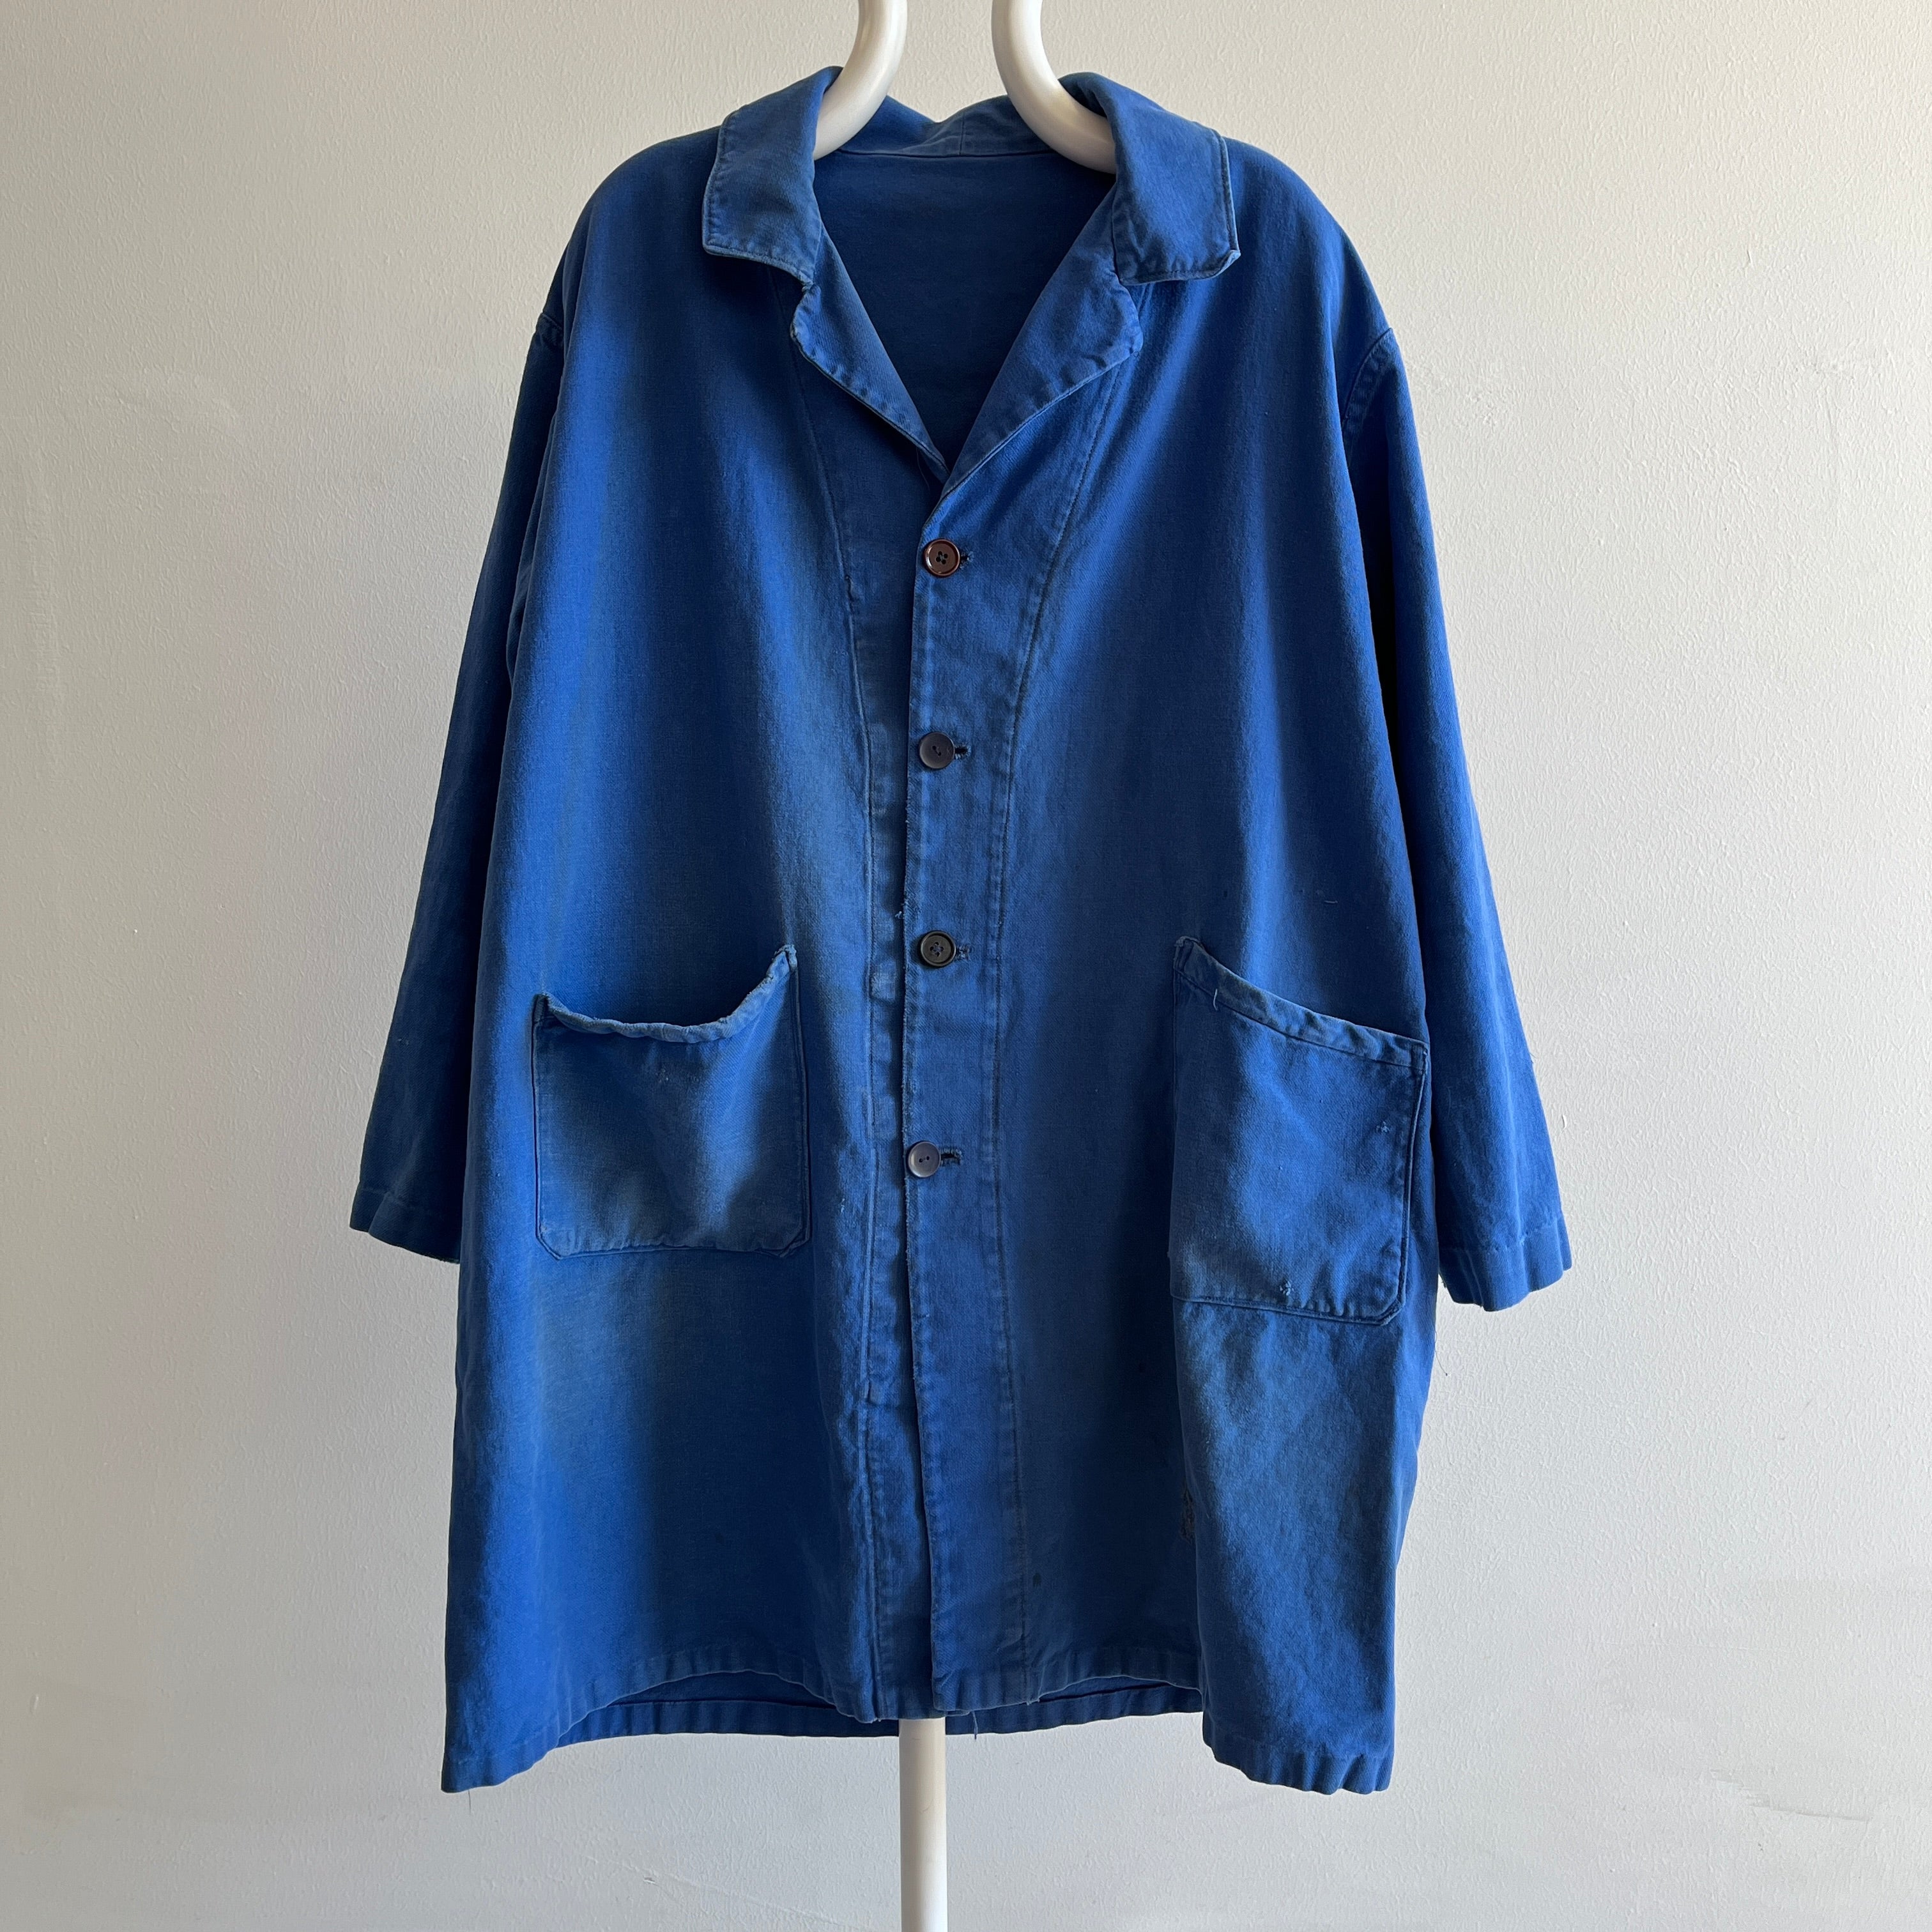 Manteau de corvée en coton des peintres français des années 1970